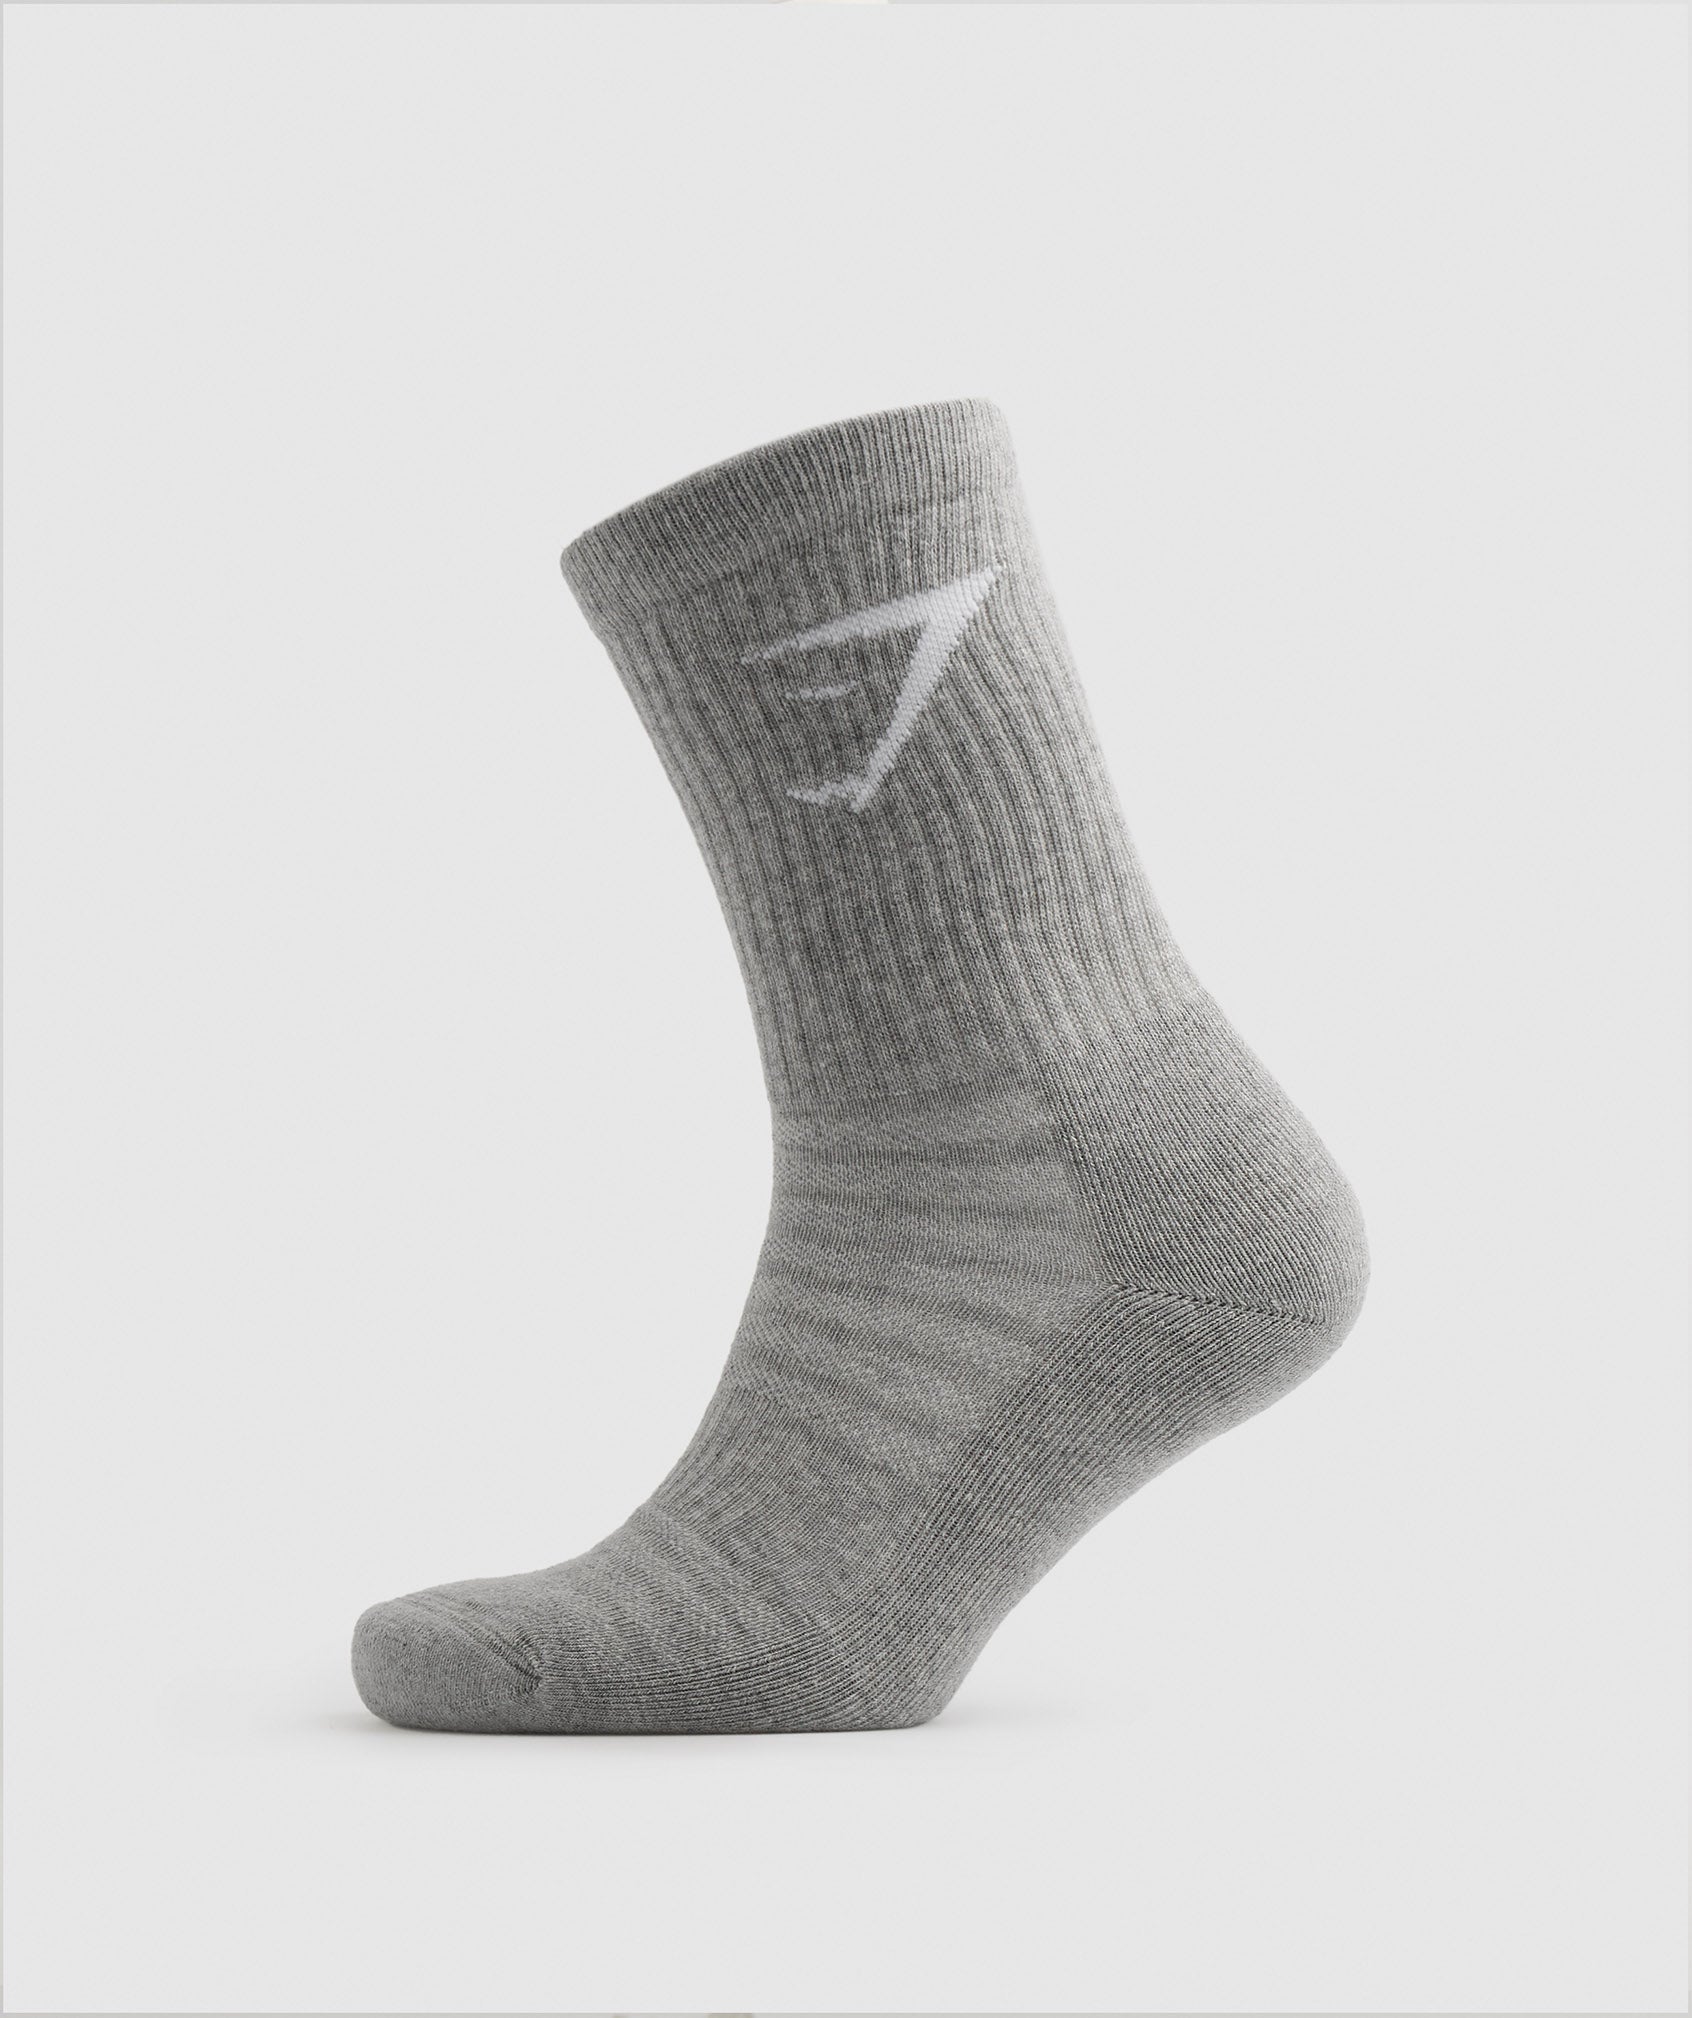 Crew Socks 5pk in White/Black/Grey/Blue/Navy - view 5